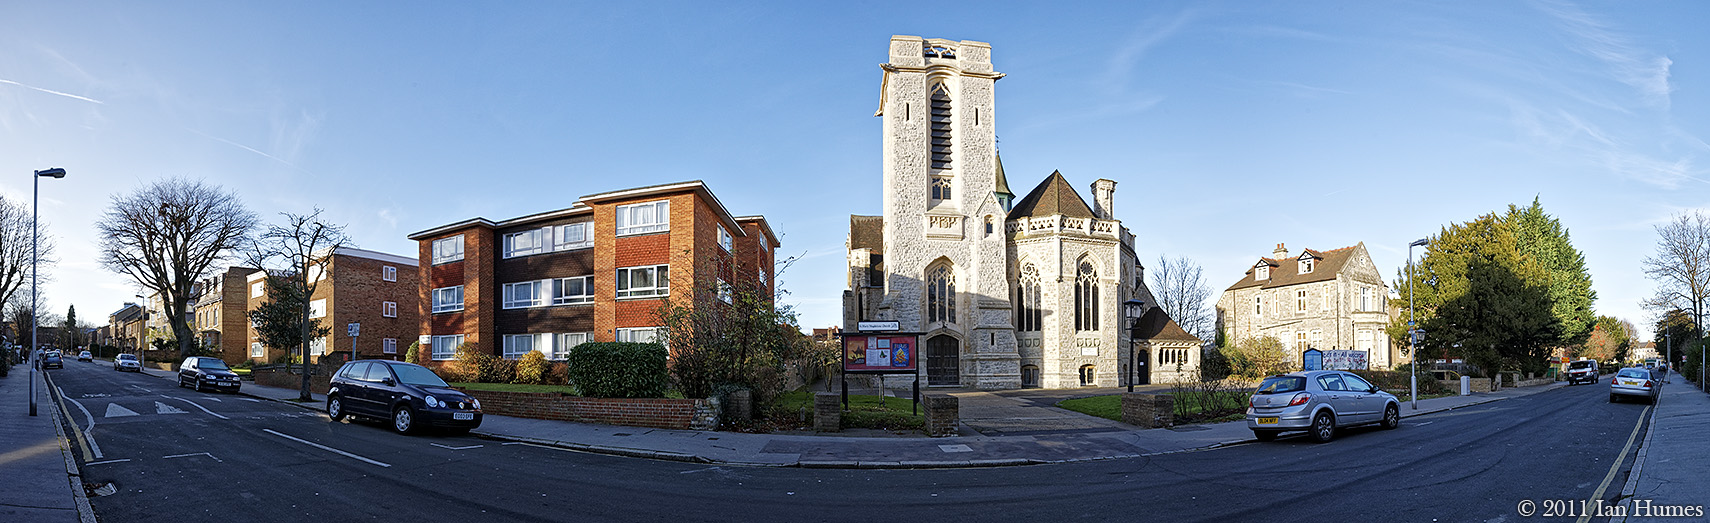 St. Mary Magdalene Church - Croydon